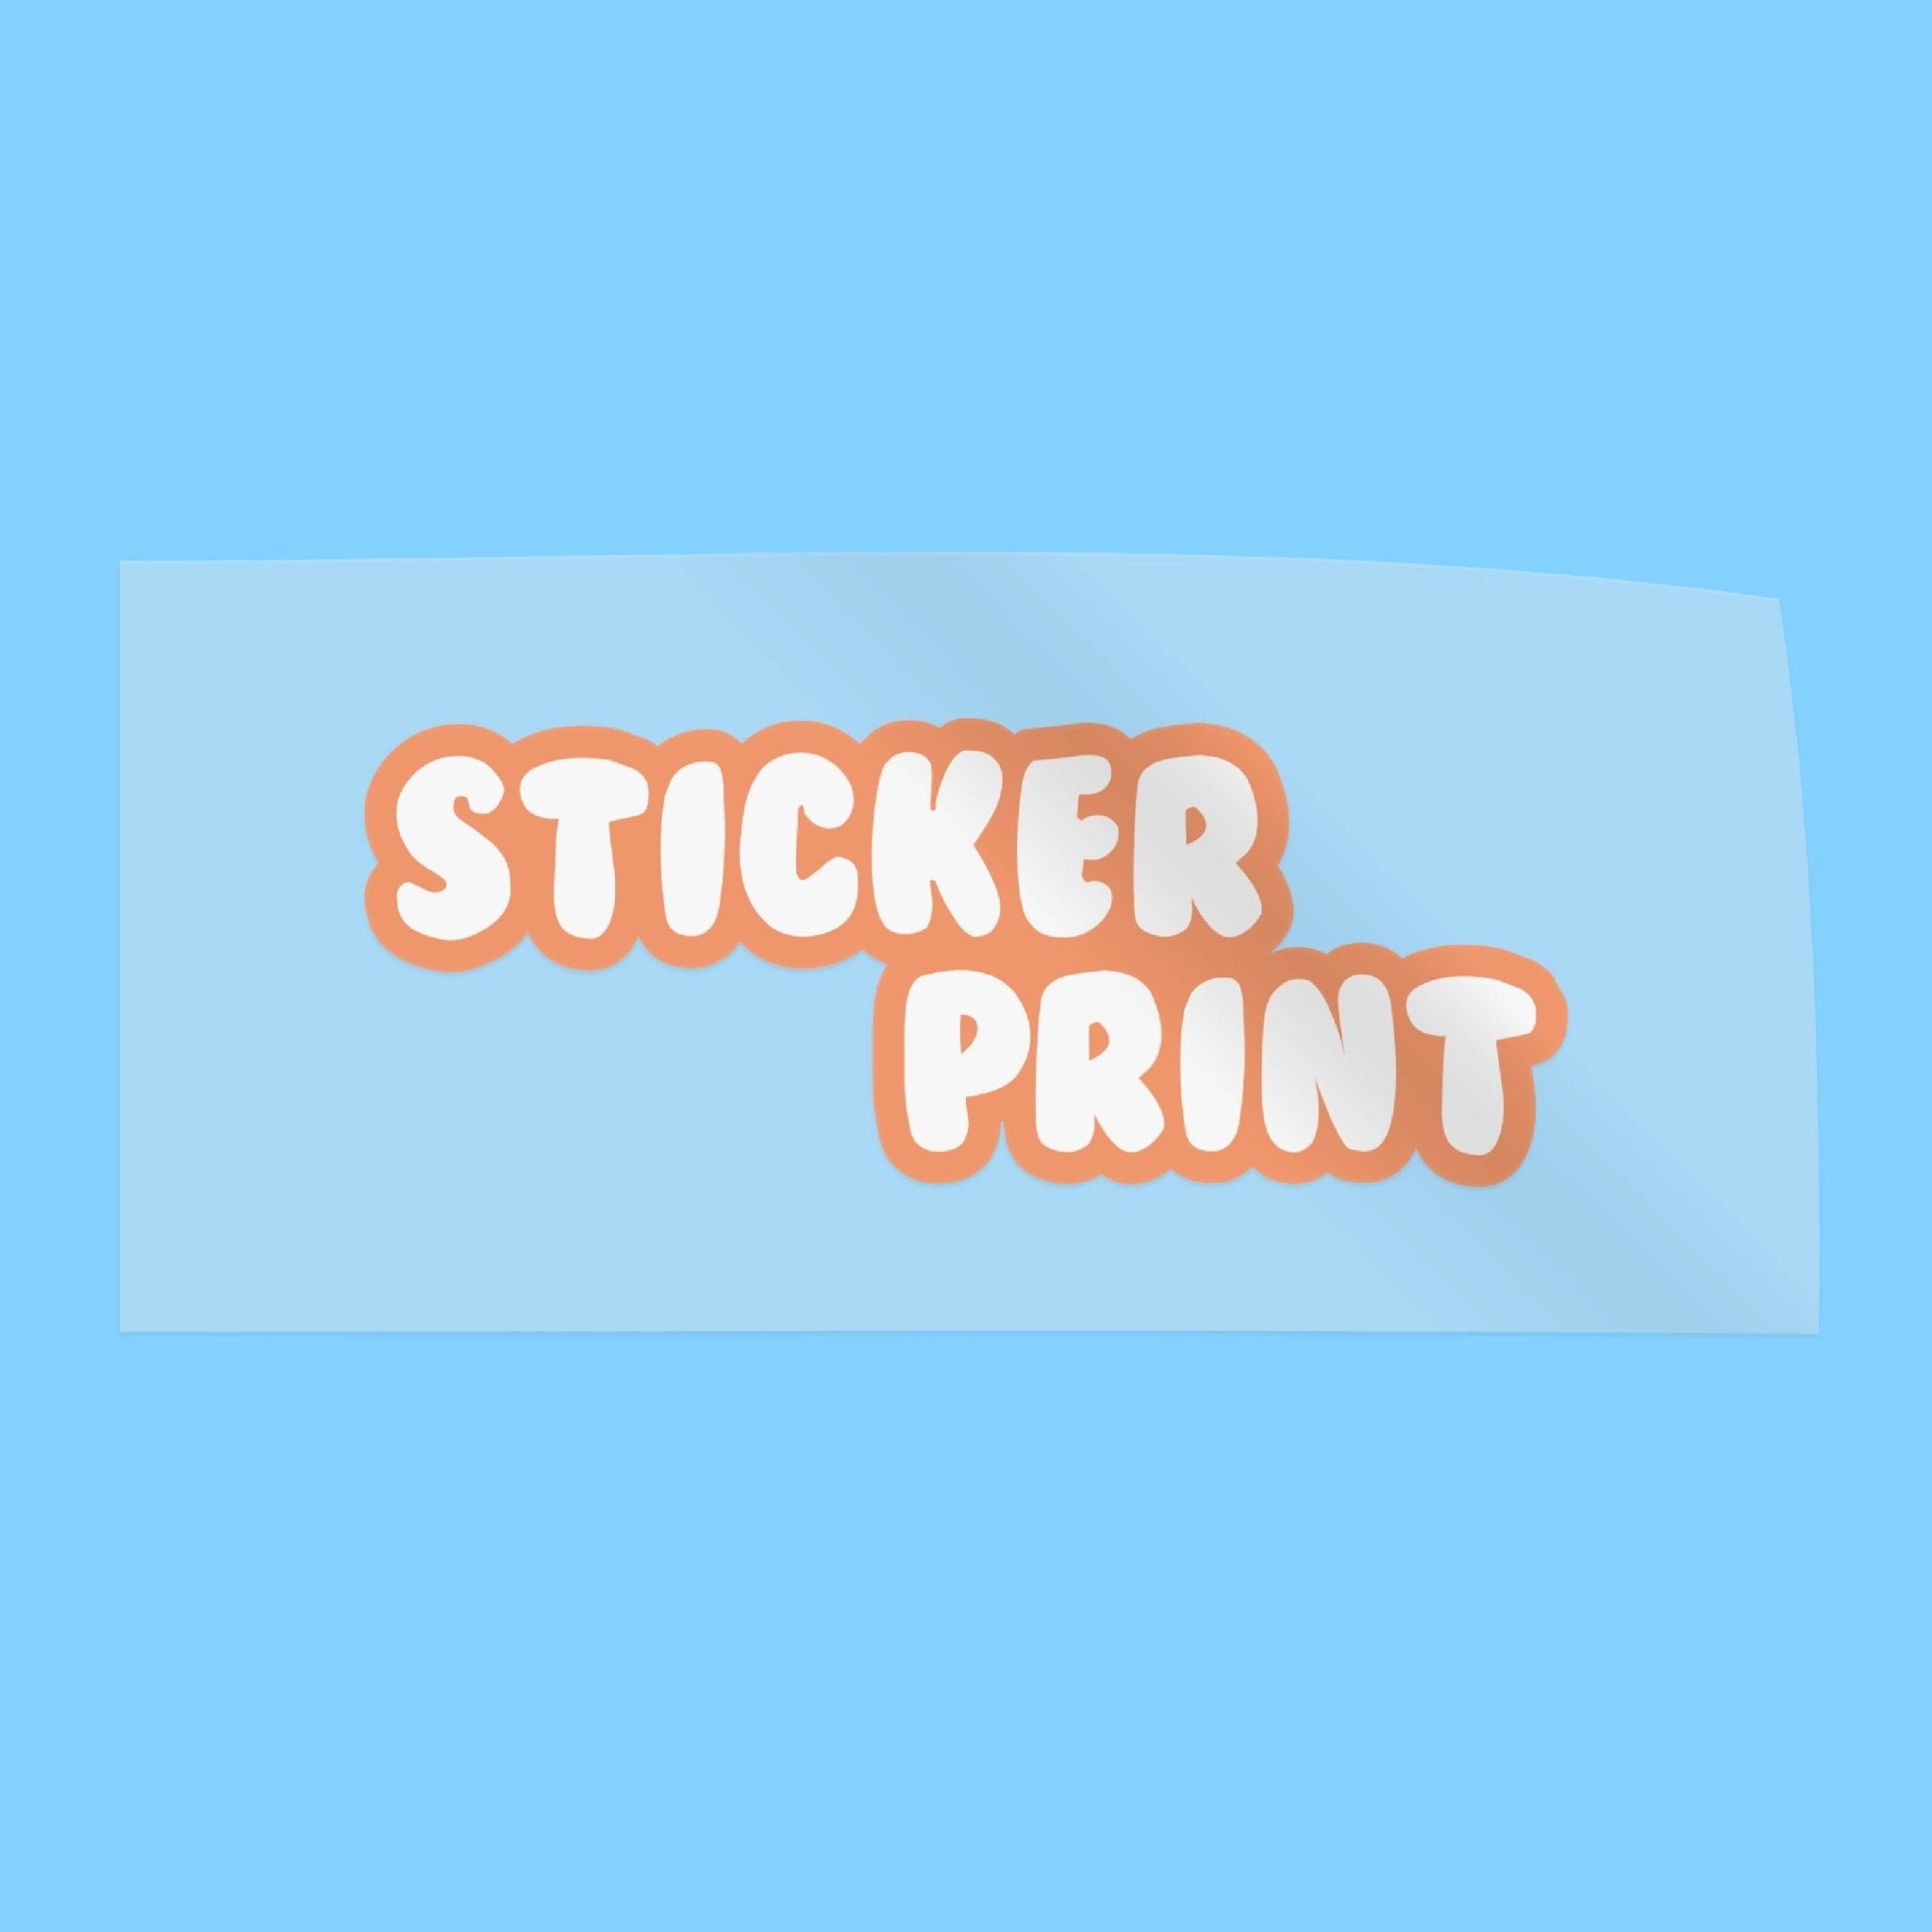 Wall Transfer Stickers - Stickerprint